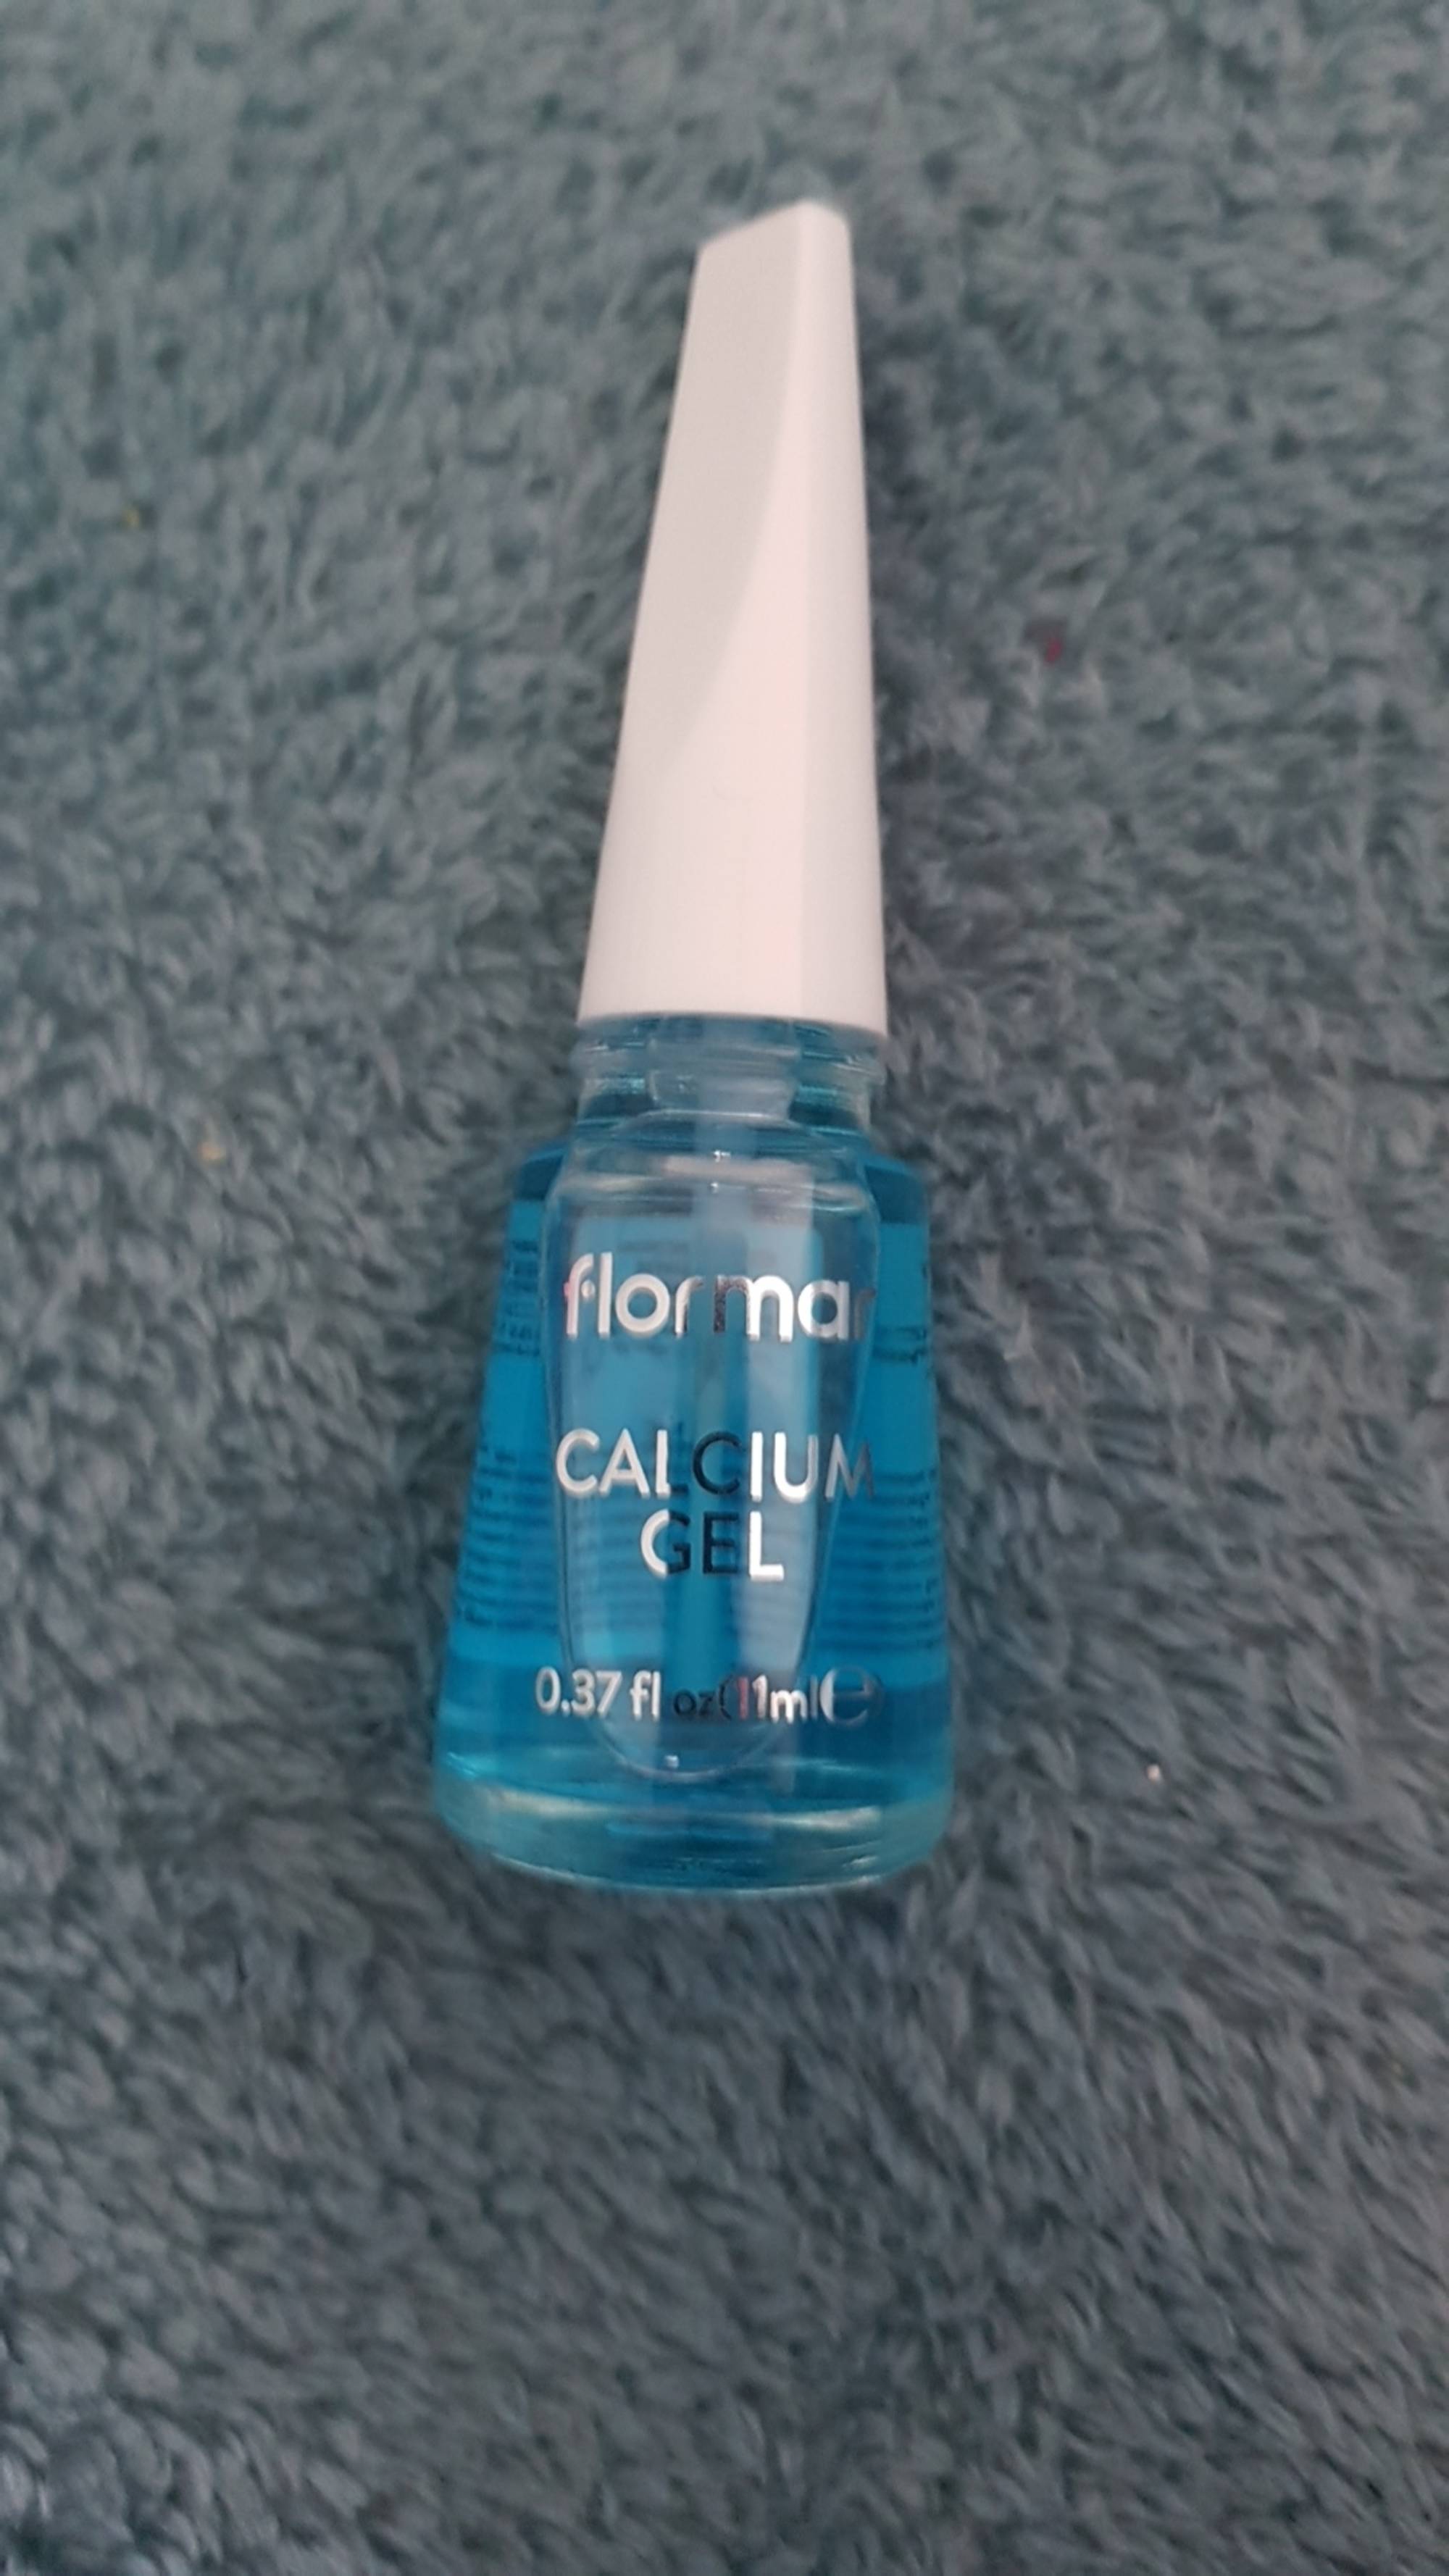 FLORMAR - Calcium gel